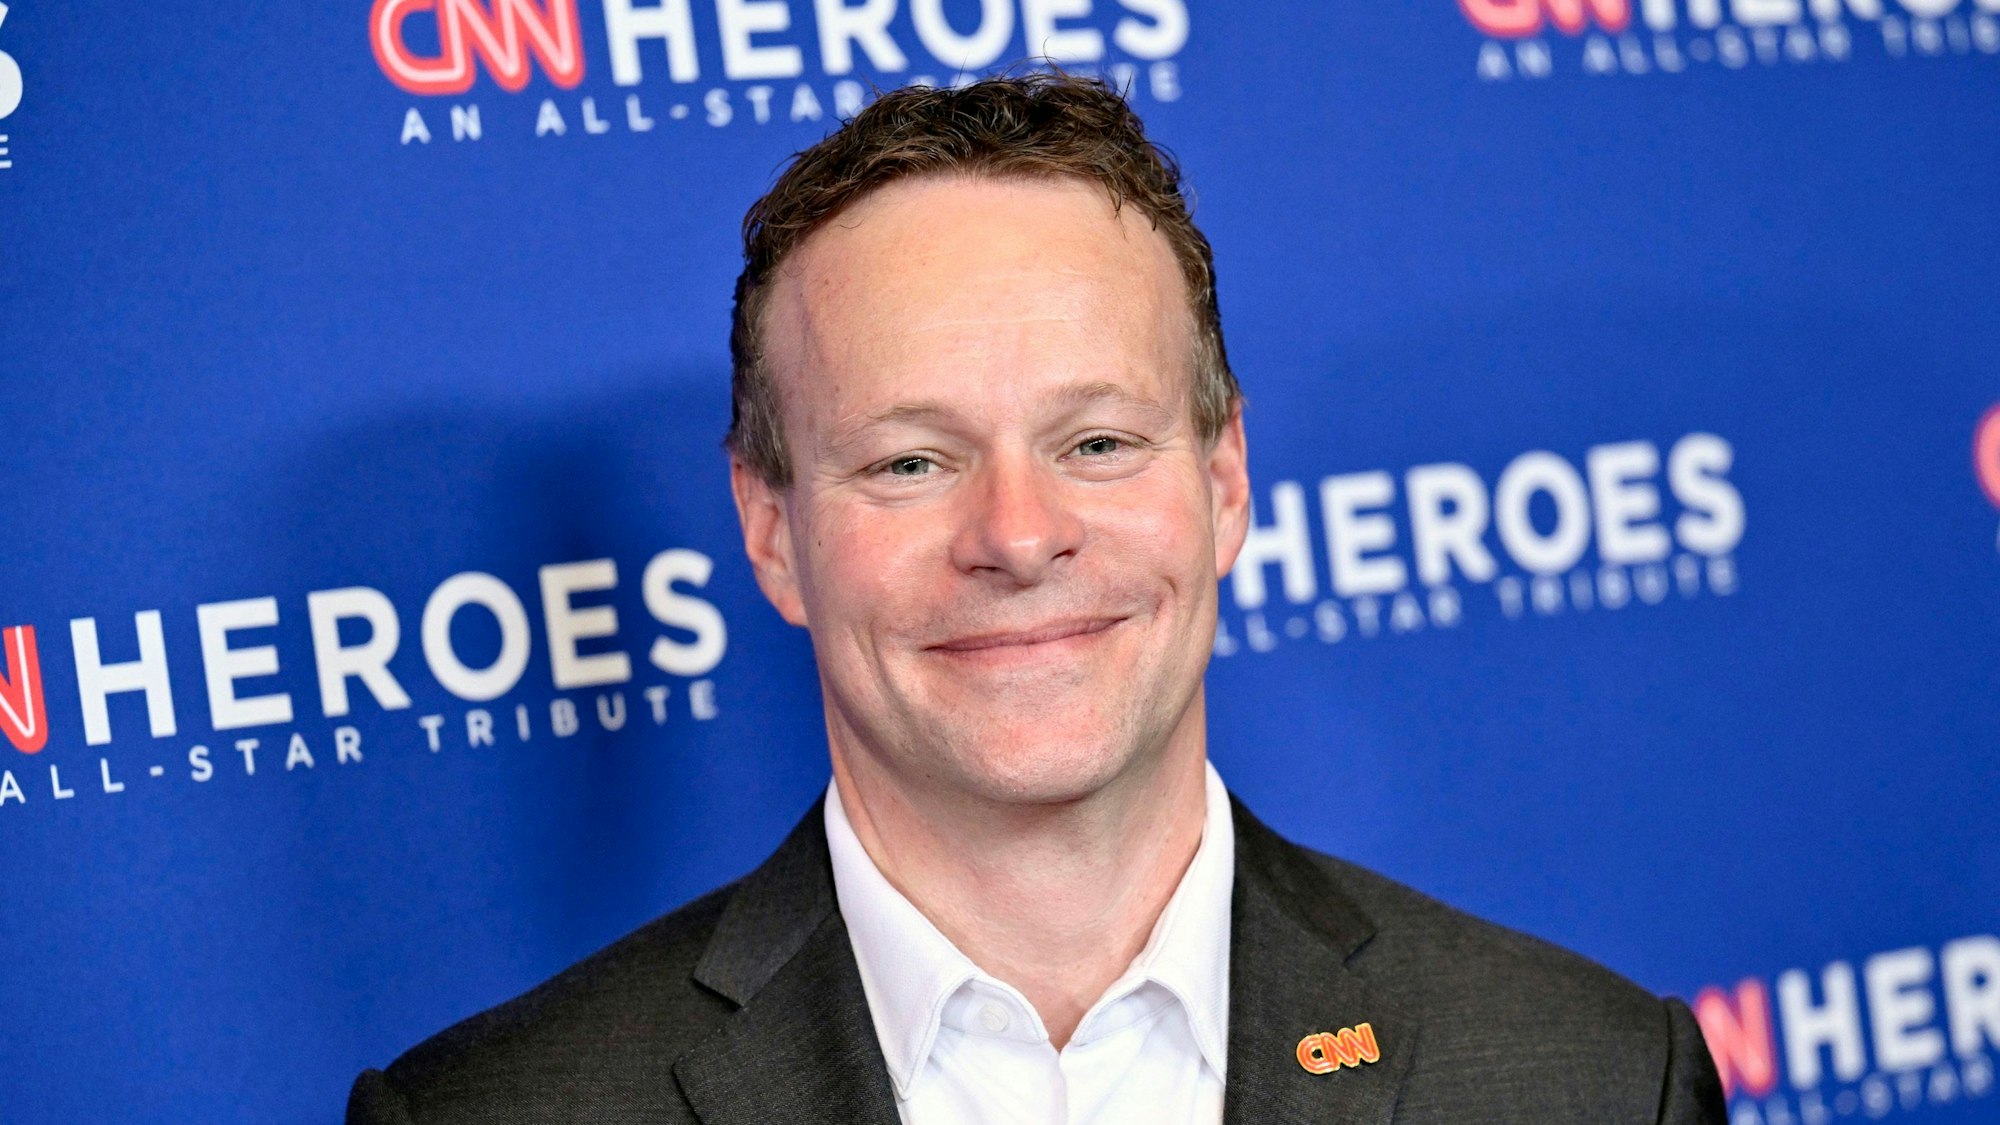 Chris Licht kommt zur 16. jährlichen «CNN Heroes All-Star Tribute».